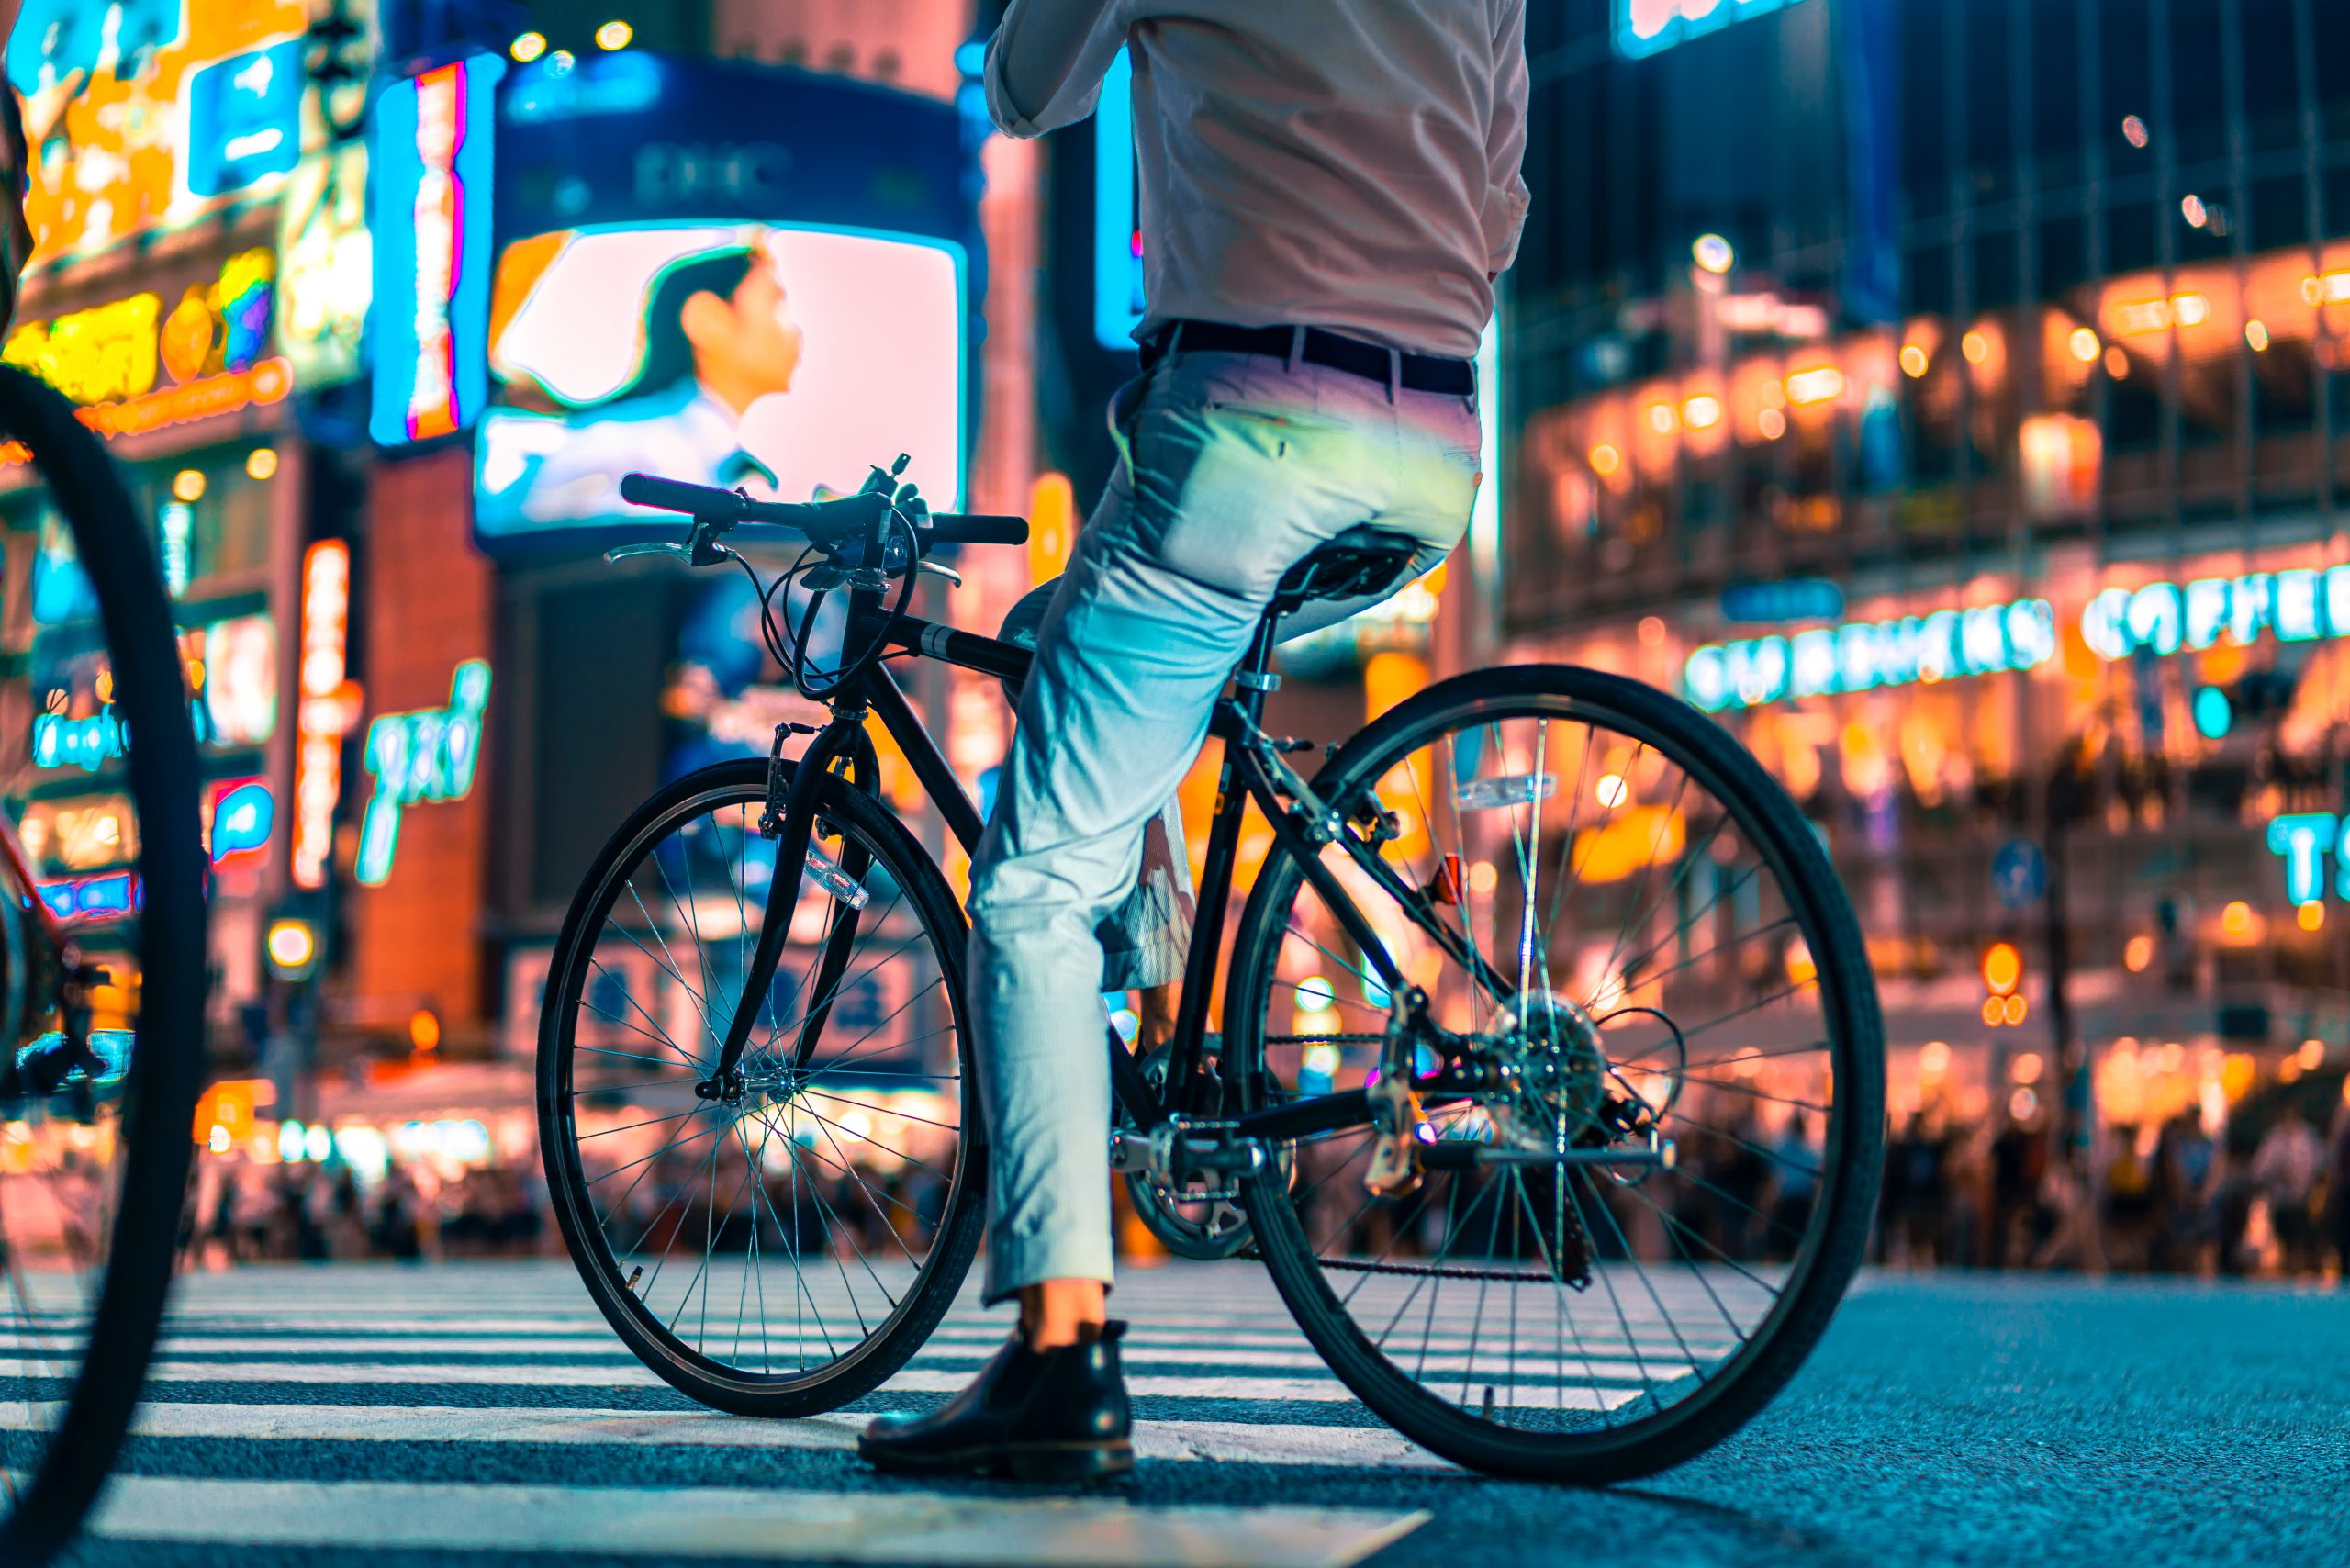 Japonês é inocentado de roubo por alegar que estava “pegando emprestado” a bicicleta da vítima